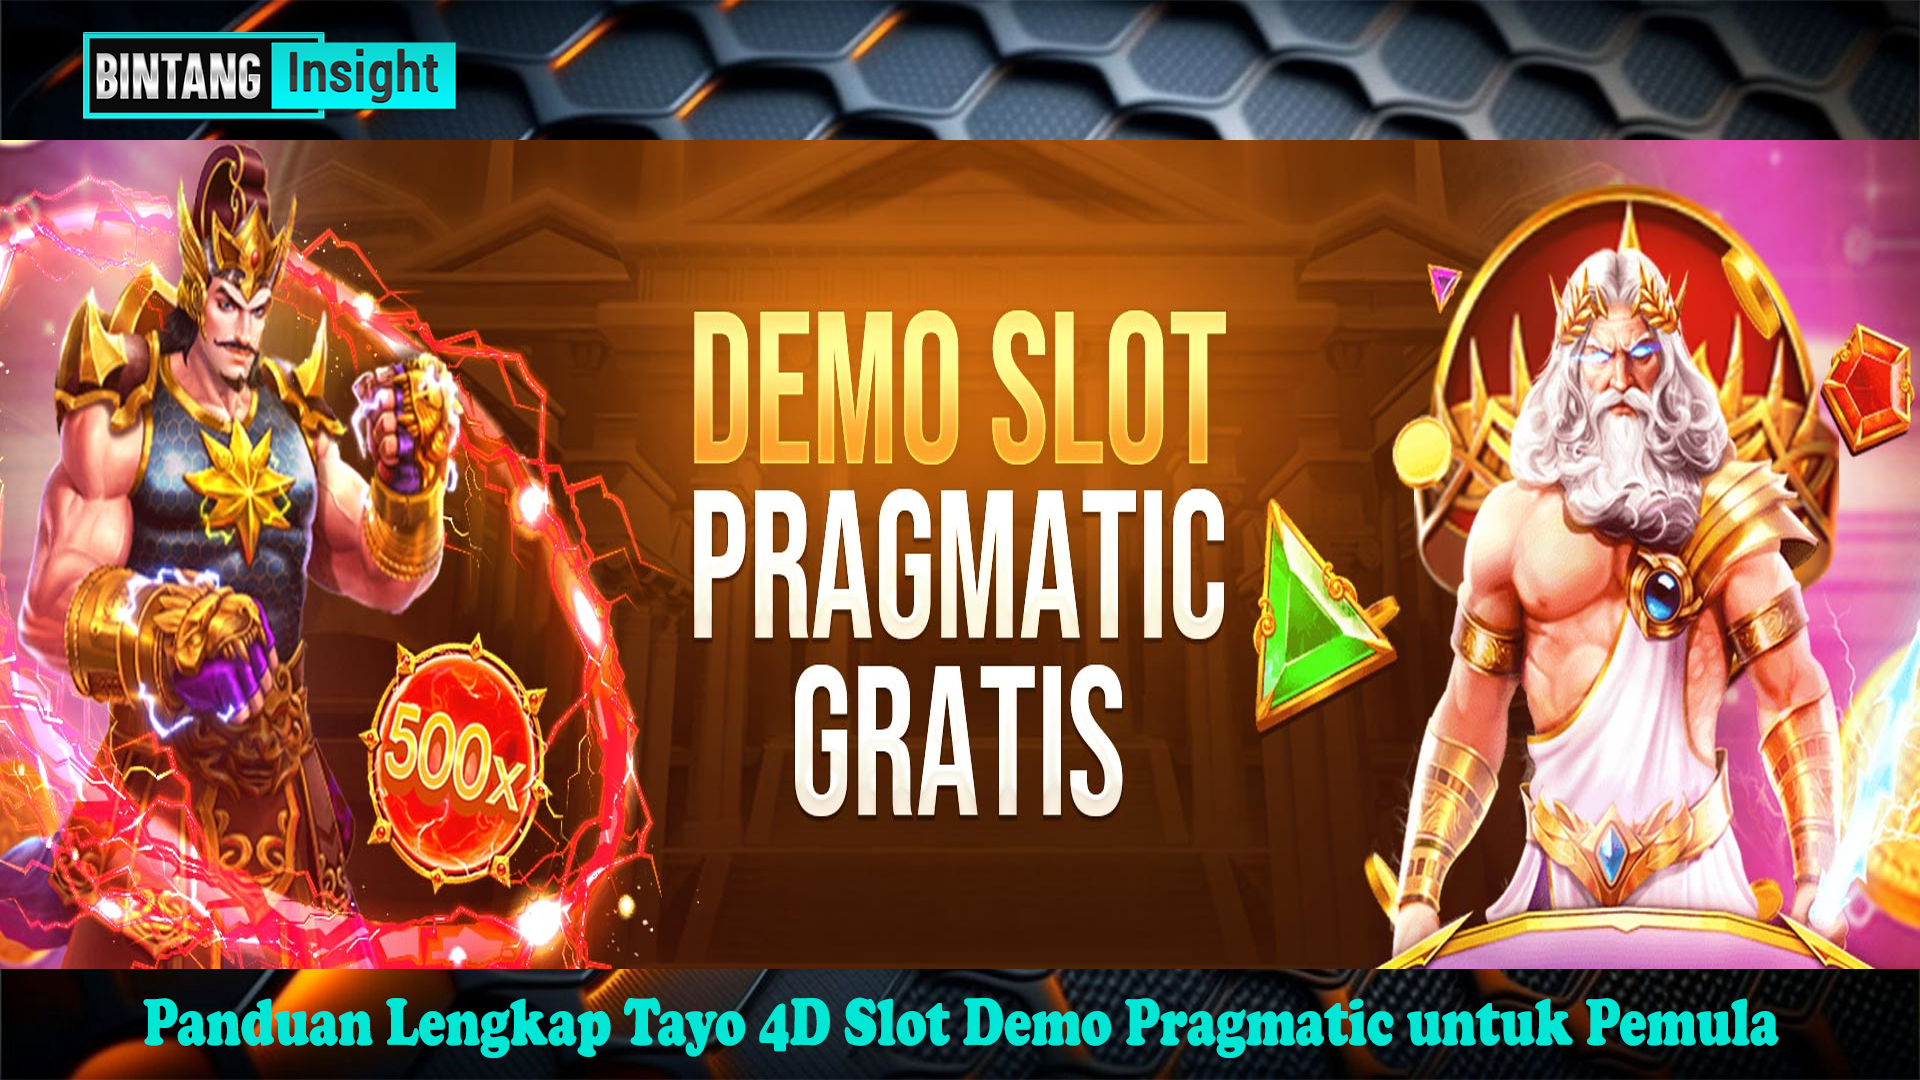 Panduan Lengkap Tayo 4D Slot Demo Pragmatic untuk Pemula